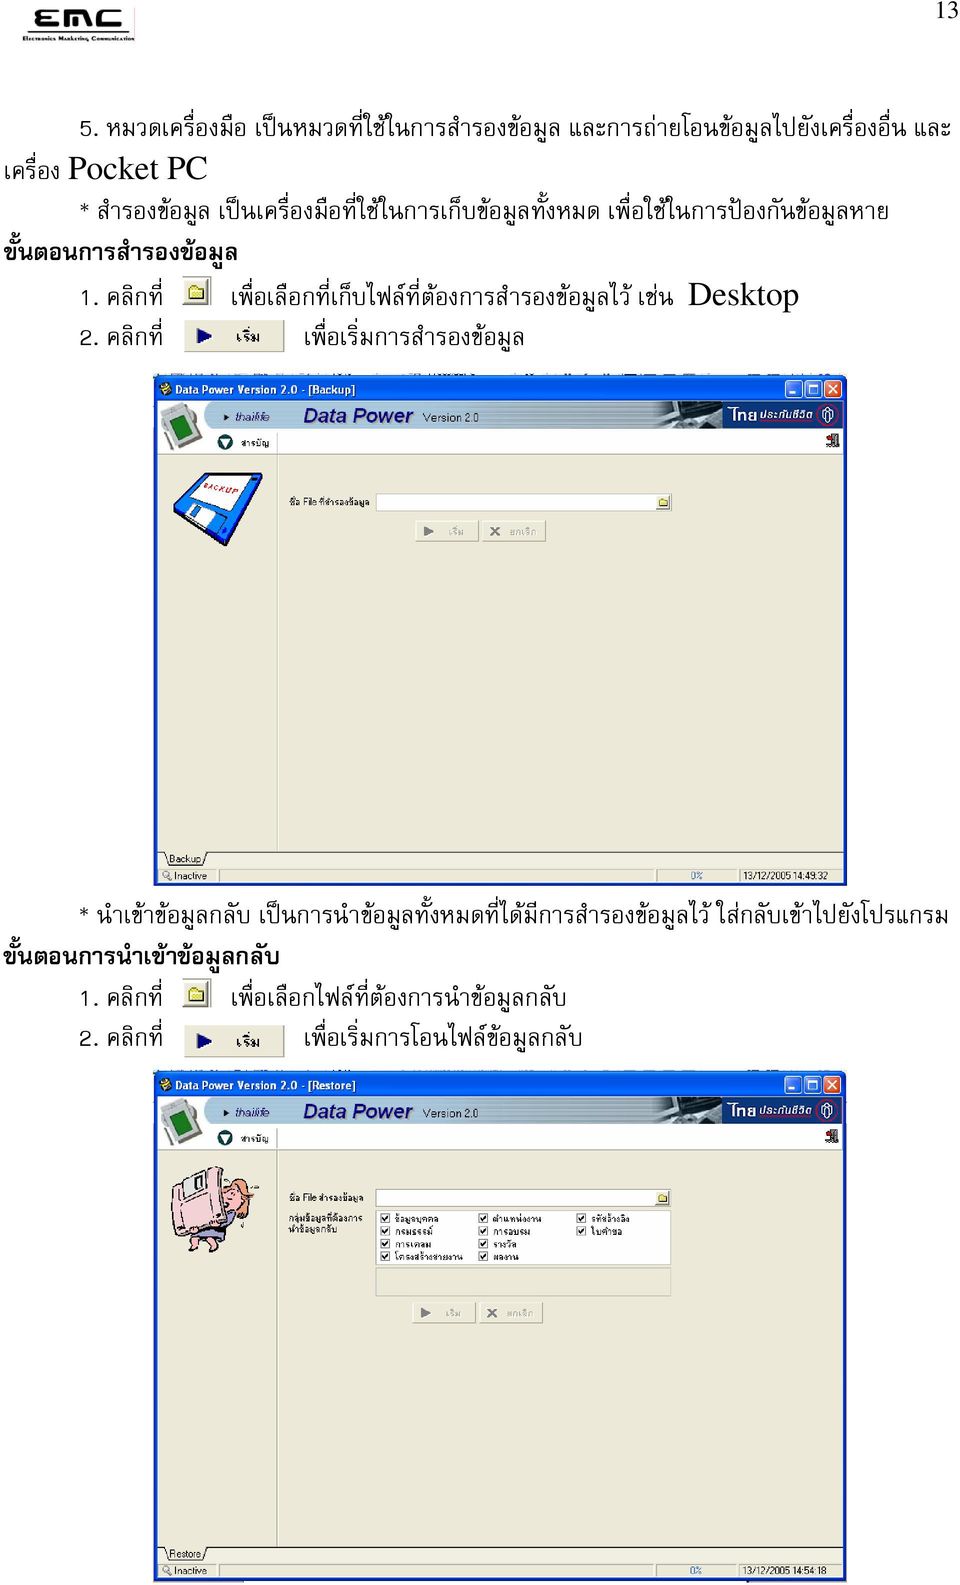 คล กท เพ อเล อกท เก บไฟล ท ต องการส ารองข อม ลไว เช น Desktop 2.